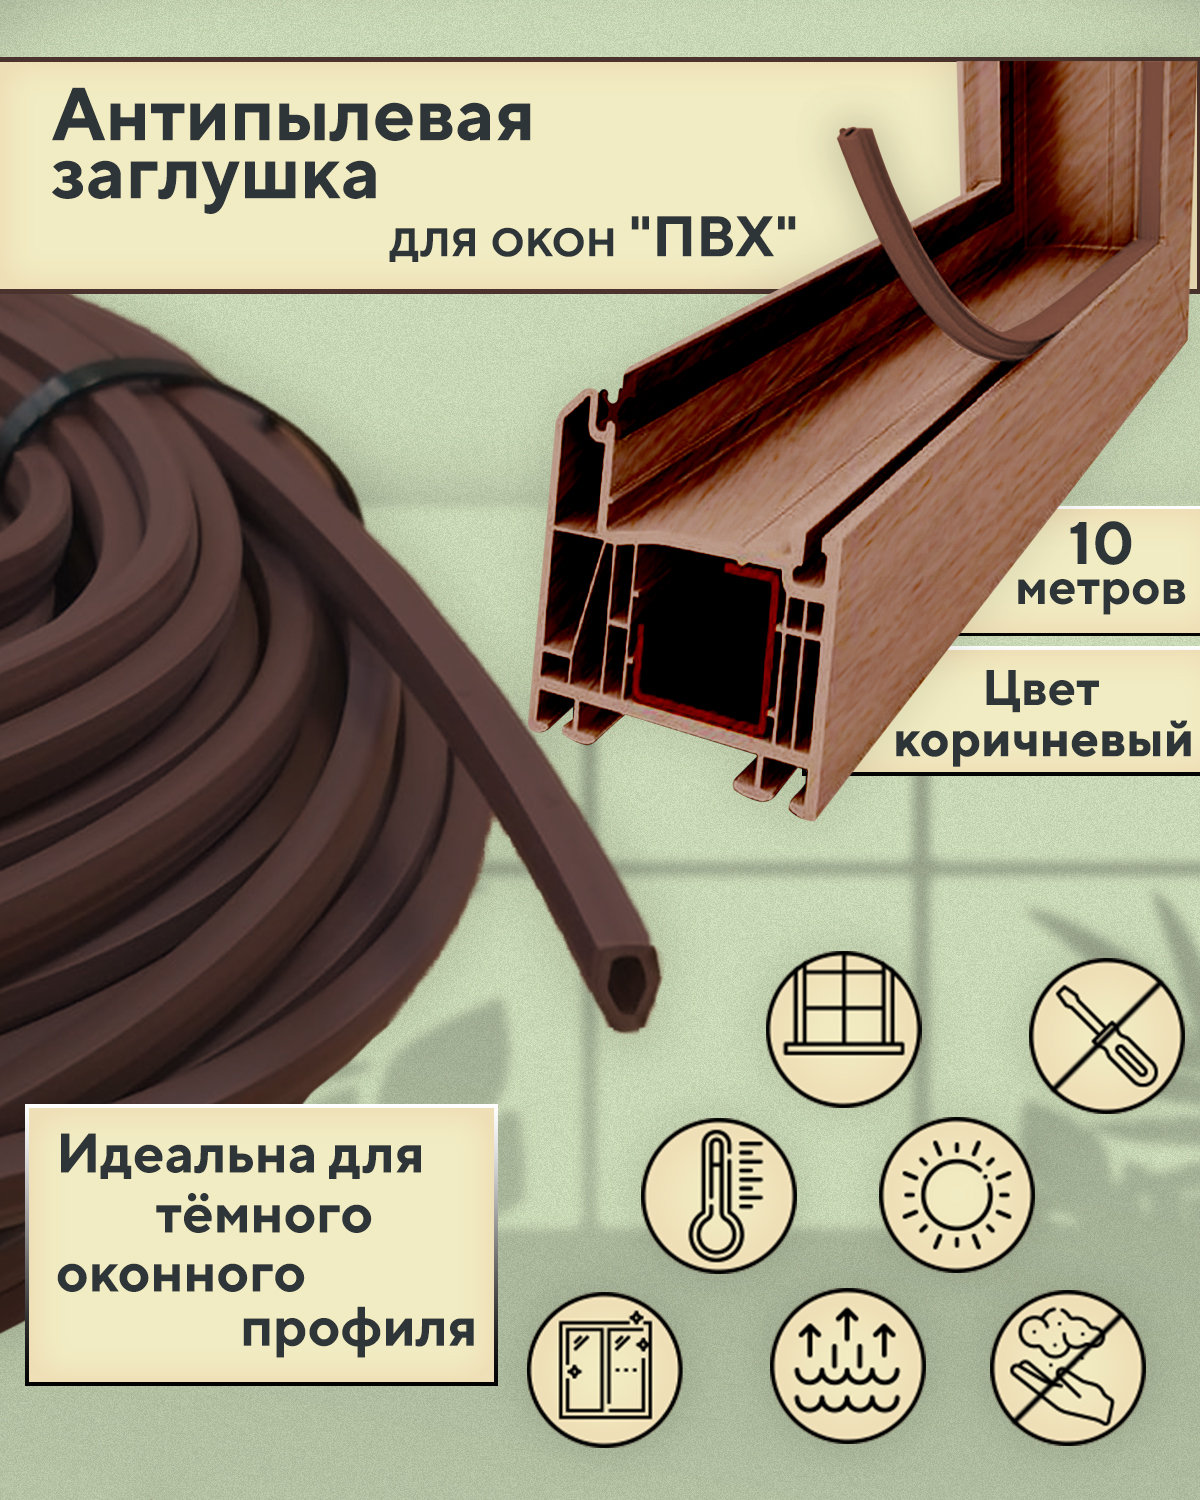 Антипылевая заглушка Contractor 10 метров, цвет коричневый антипылевая заглушка паза штапика komfort москитные системы